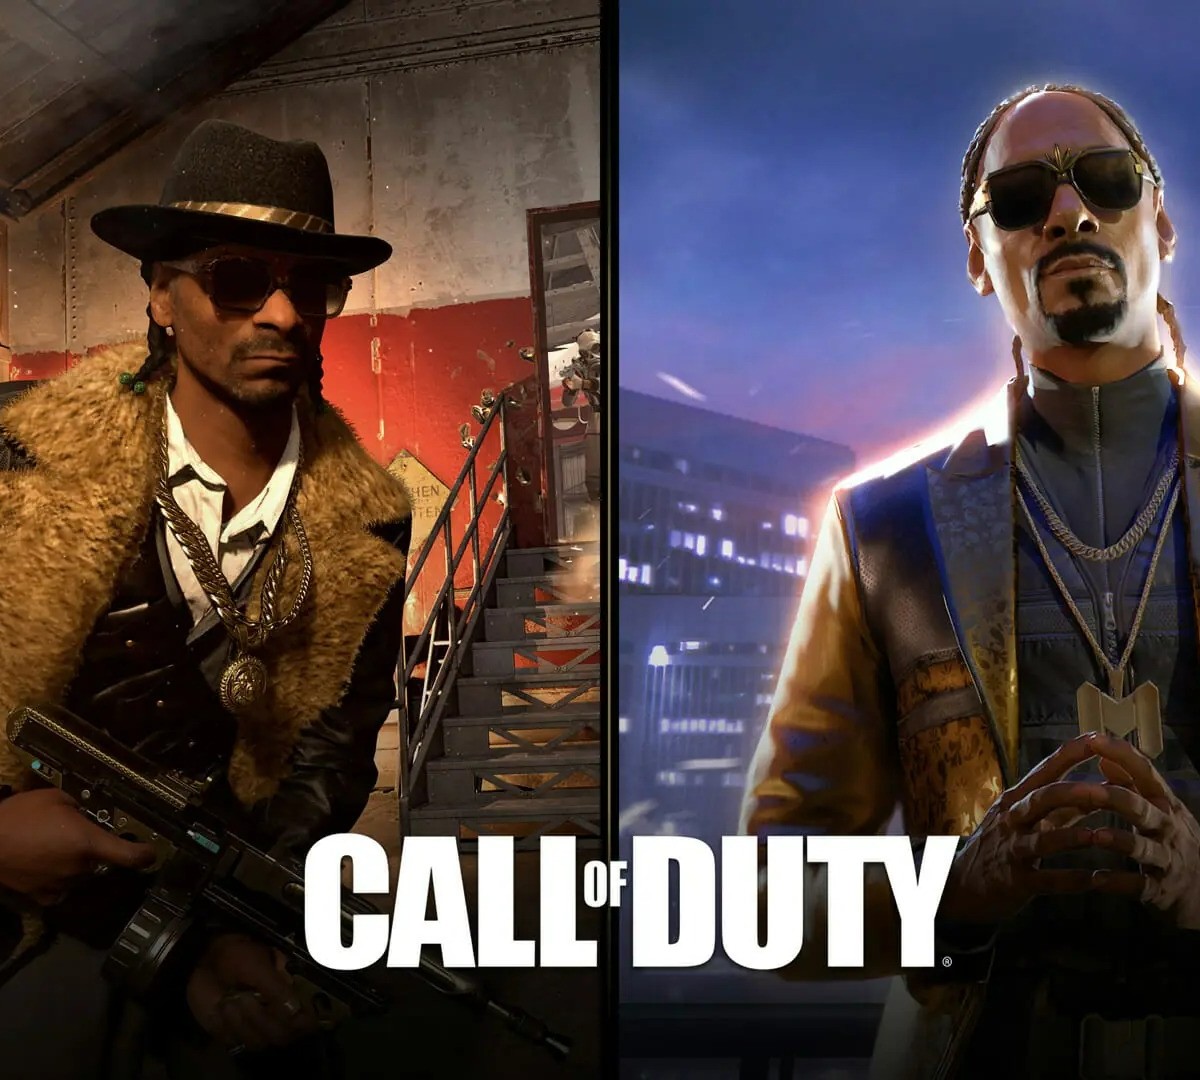 Temporada 2 de Call of Duty: Vanguard terá personagem brasileiro